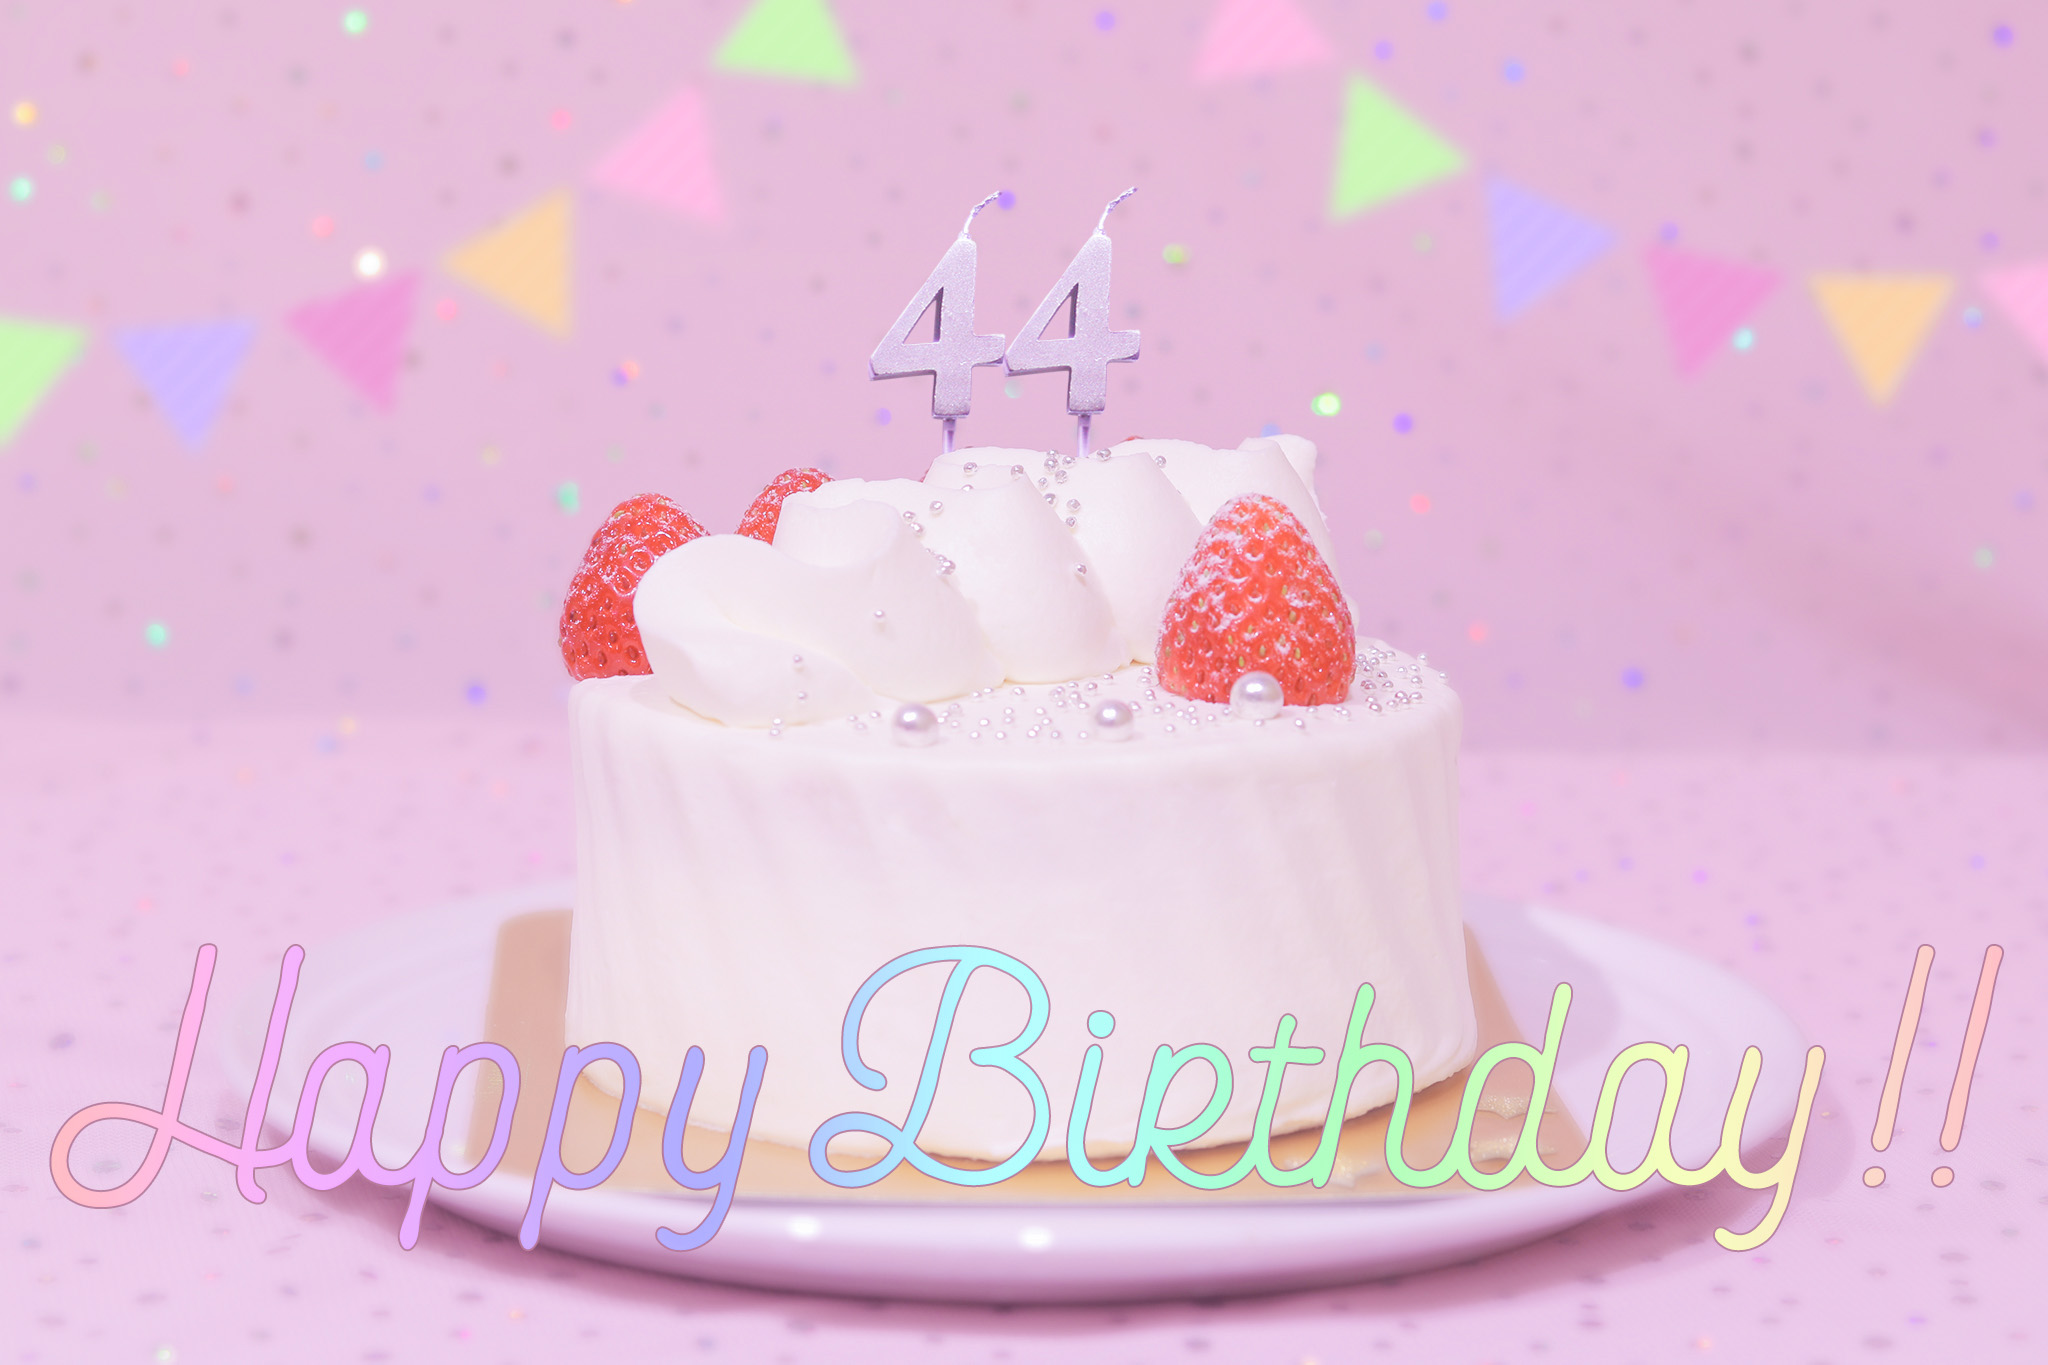 かわいい誕生日画像 ケーキとパステルカラーで可愛くお祝い 44歳編 のフリー画像 おしゃれなフリー写真素材 Girly Drop